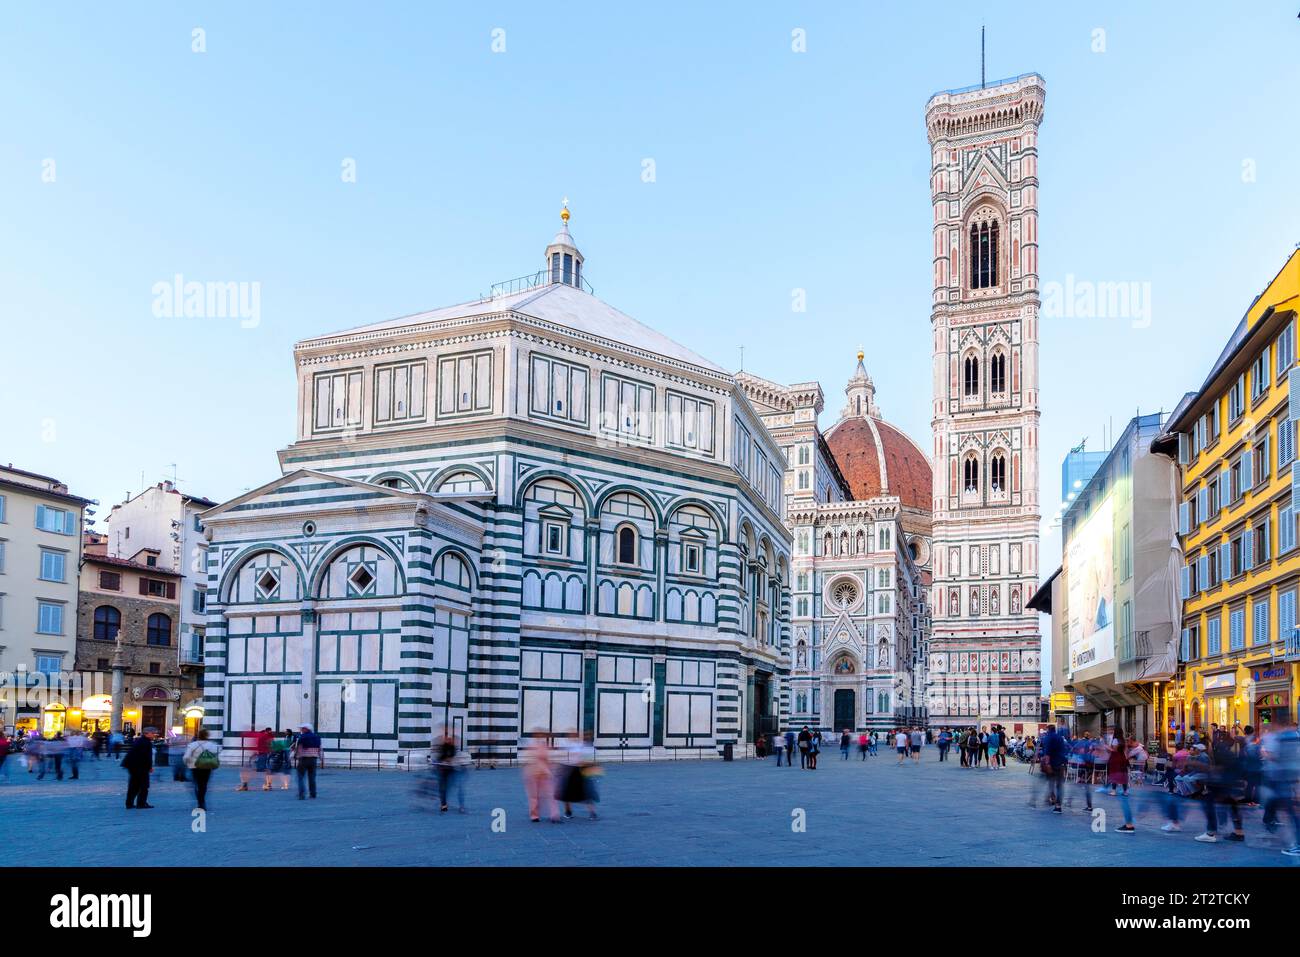 Piazza del Duomo, Brunelleschi dome, Baptistery, Duomo, Cattedrale di Santa Maria del Fiore Florence,Tuscany,Italy,Europe Stock Photo